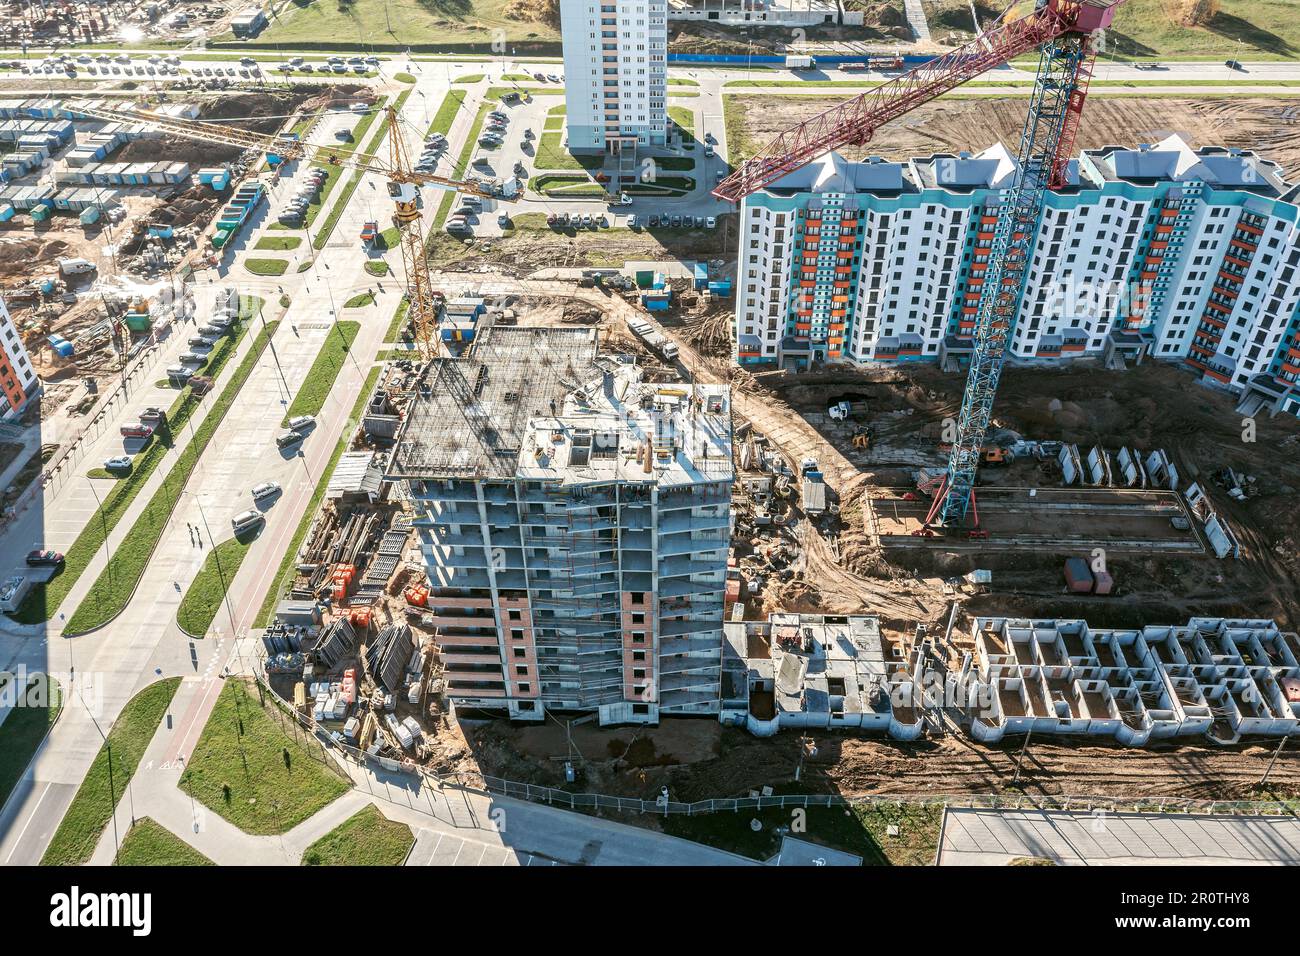 vista aerea di un grande cantiere con edifici residenziali in costruzione, gru, attrezzature e materiali da costruzione. Foto Stock